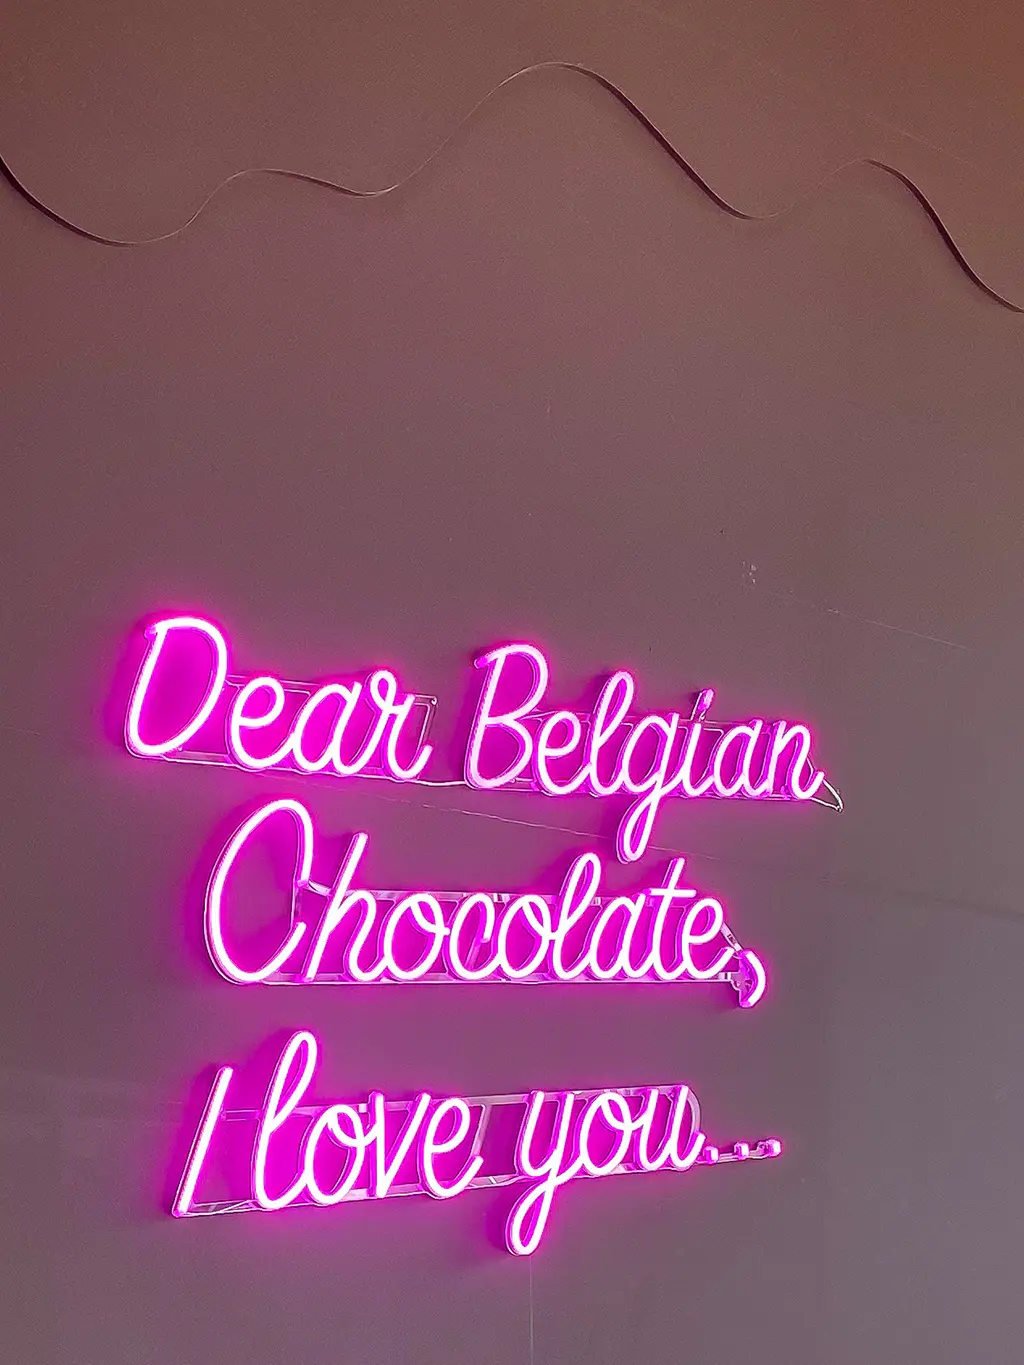 Notre avis sur Chocolate nation : Le plus grand musée du chocolat belge au monde